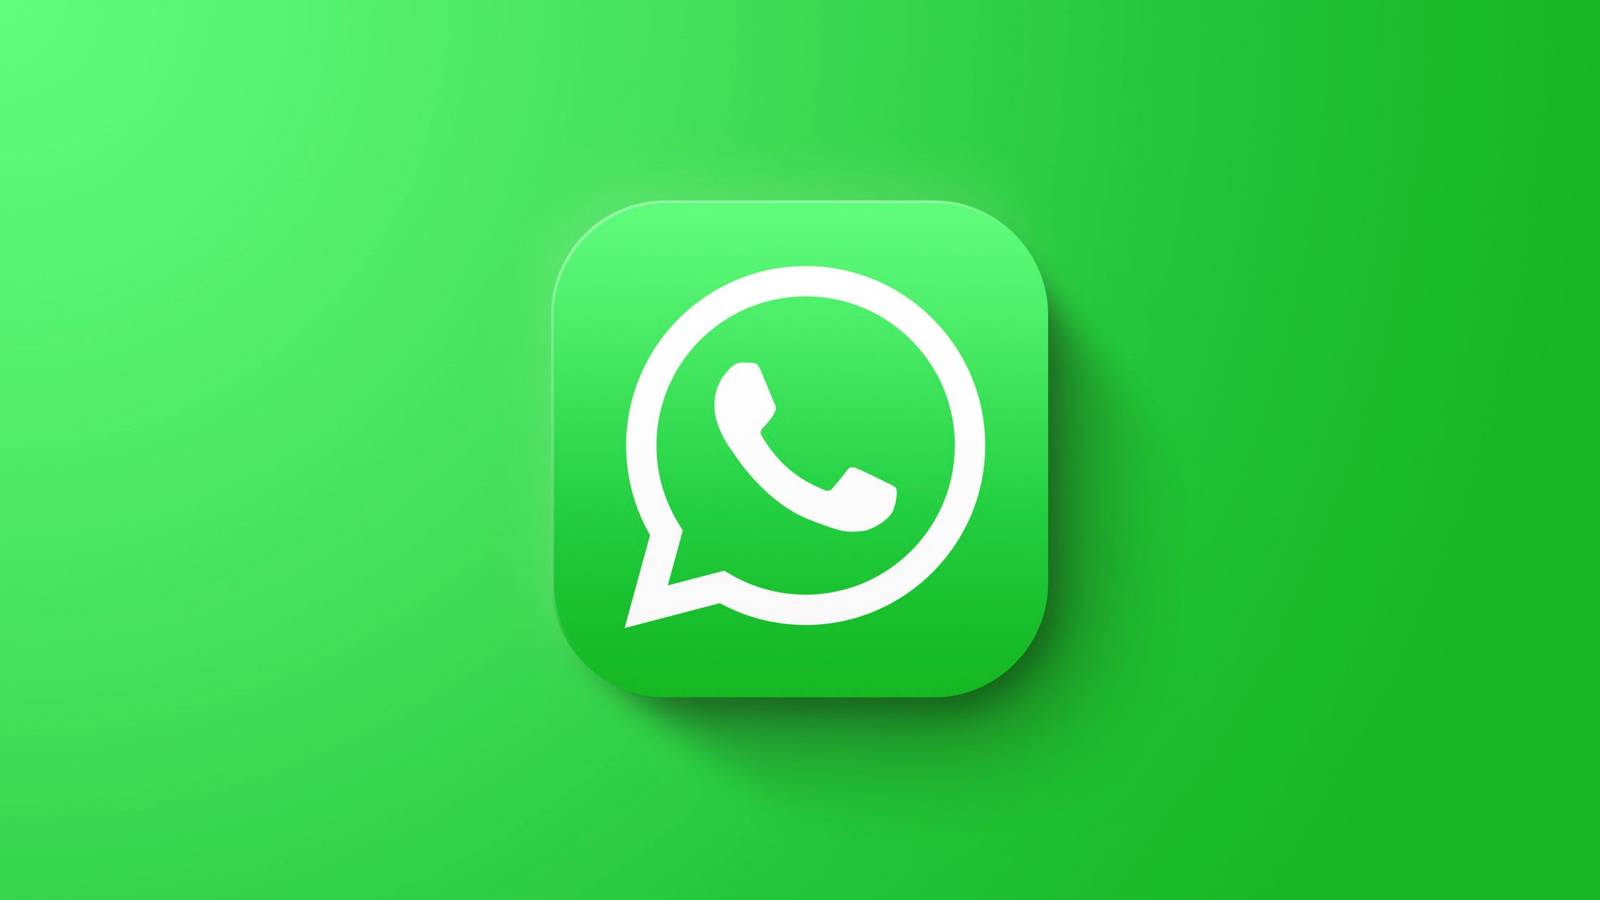 WhatsApp-muutos miljoonia ihmisiä odotettiin